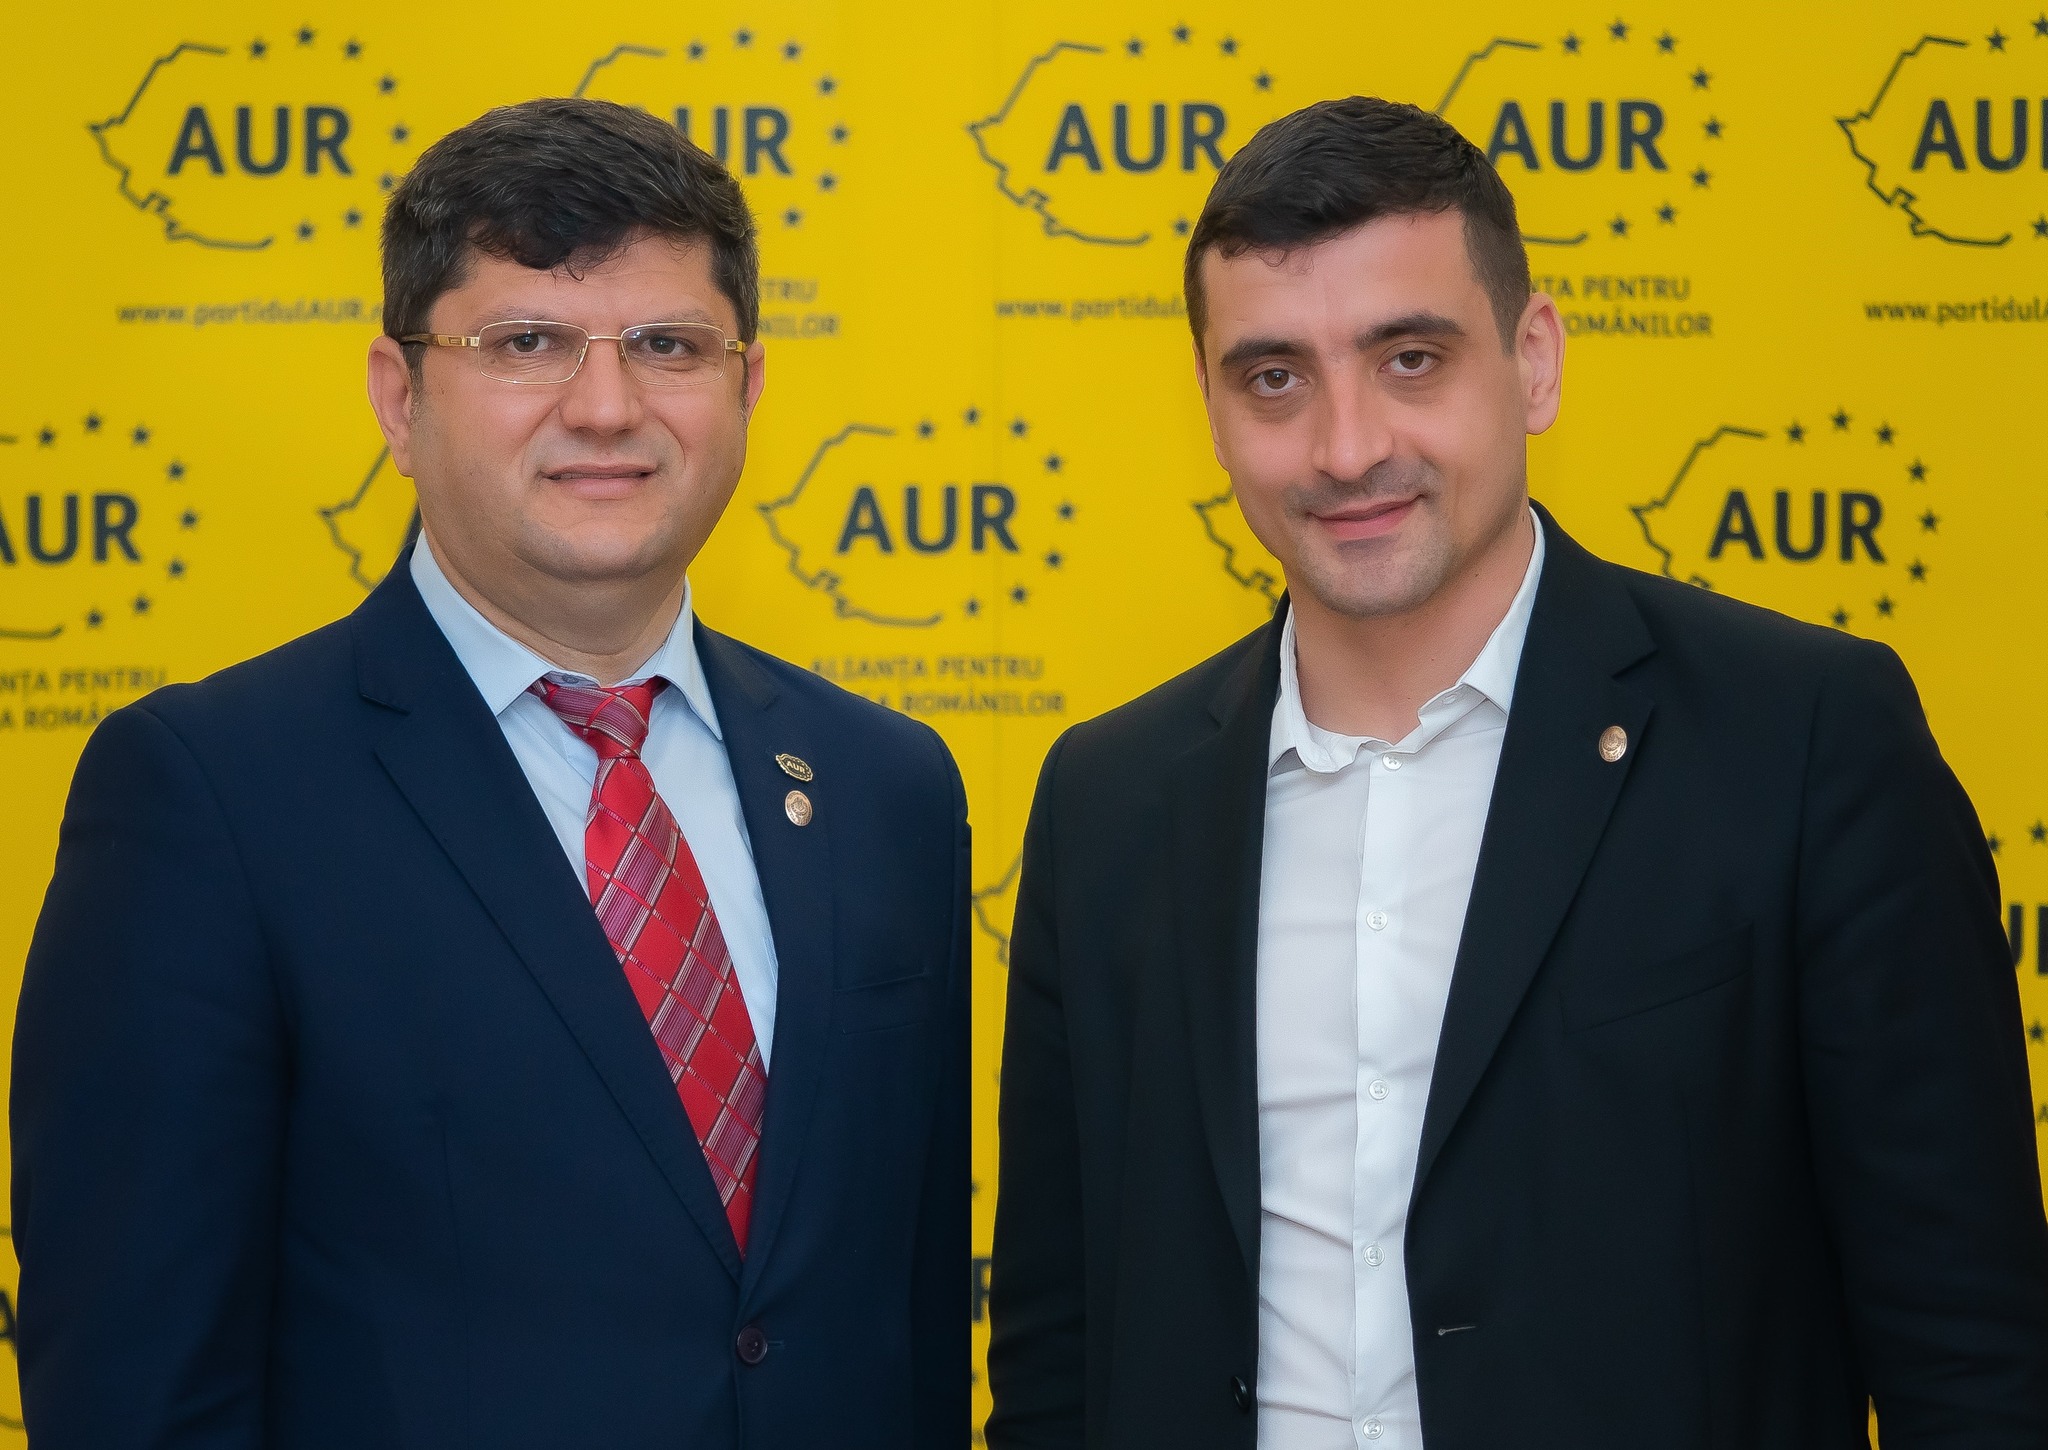 Doi extremiști: Ringo Dămureanu, sindicalistul-deputat AUR și șeful lui, George Simion, deputat și lider al partidului naționalist AUR 